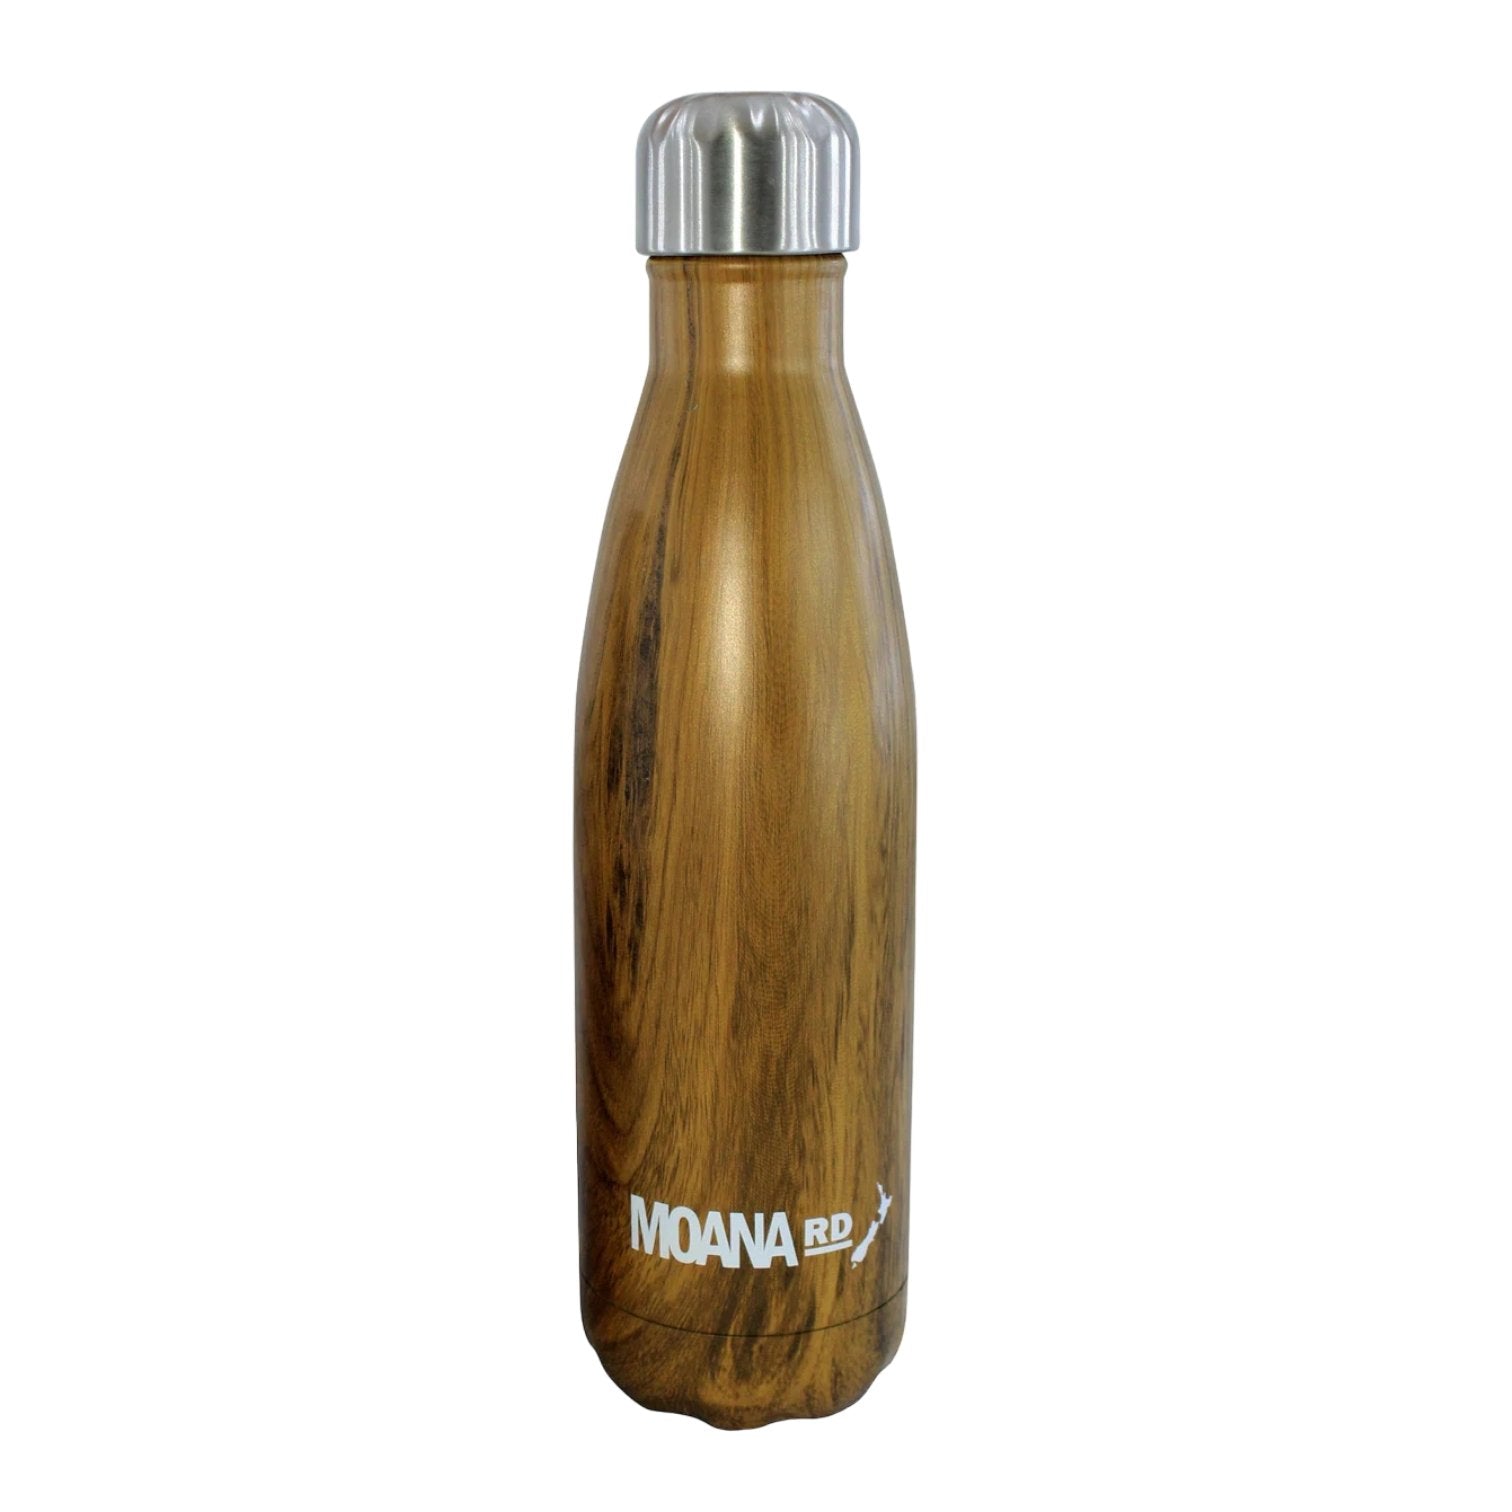 Moana Road “Wooden” drink bottle - Beautiful Gifts